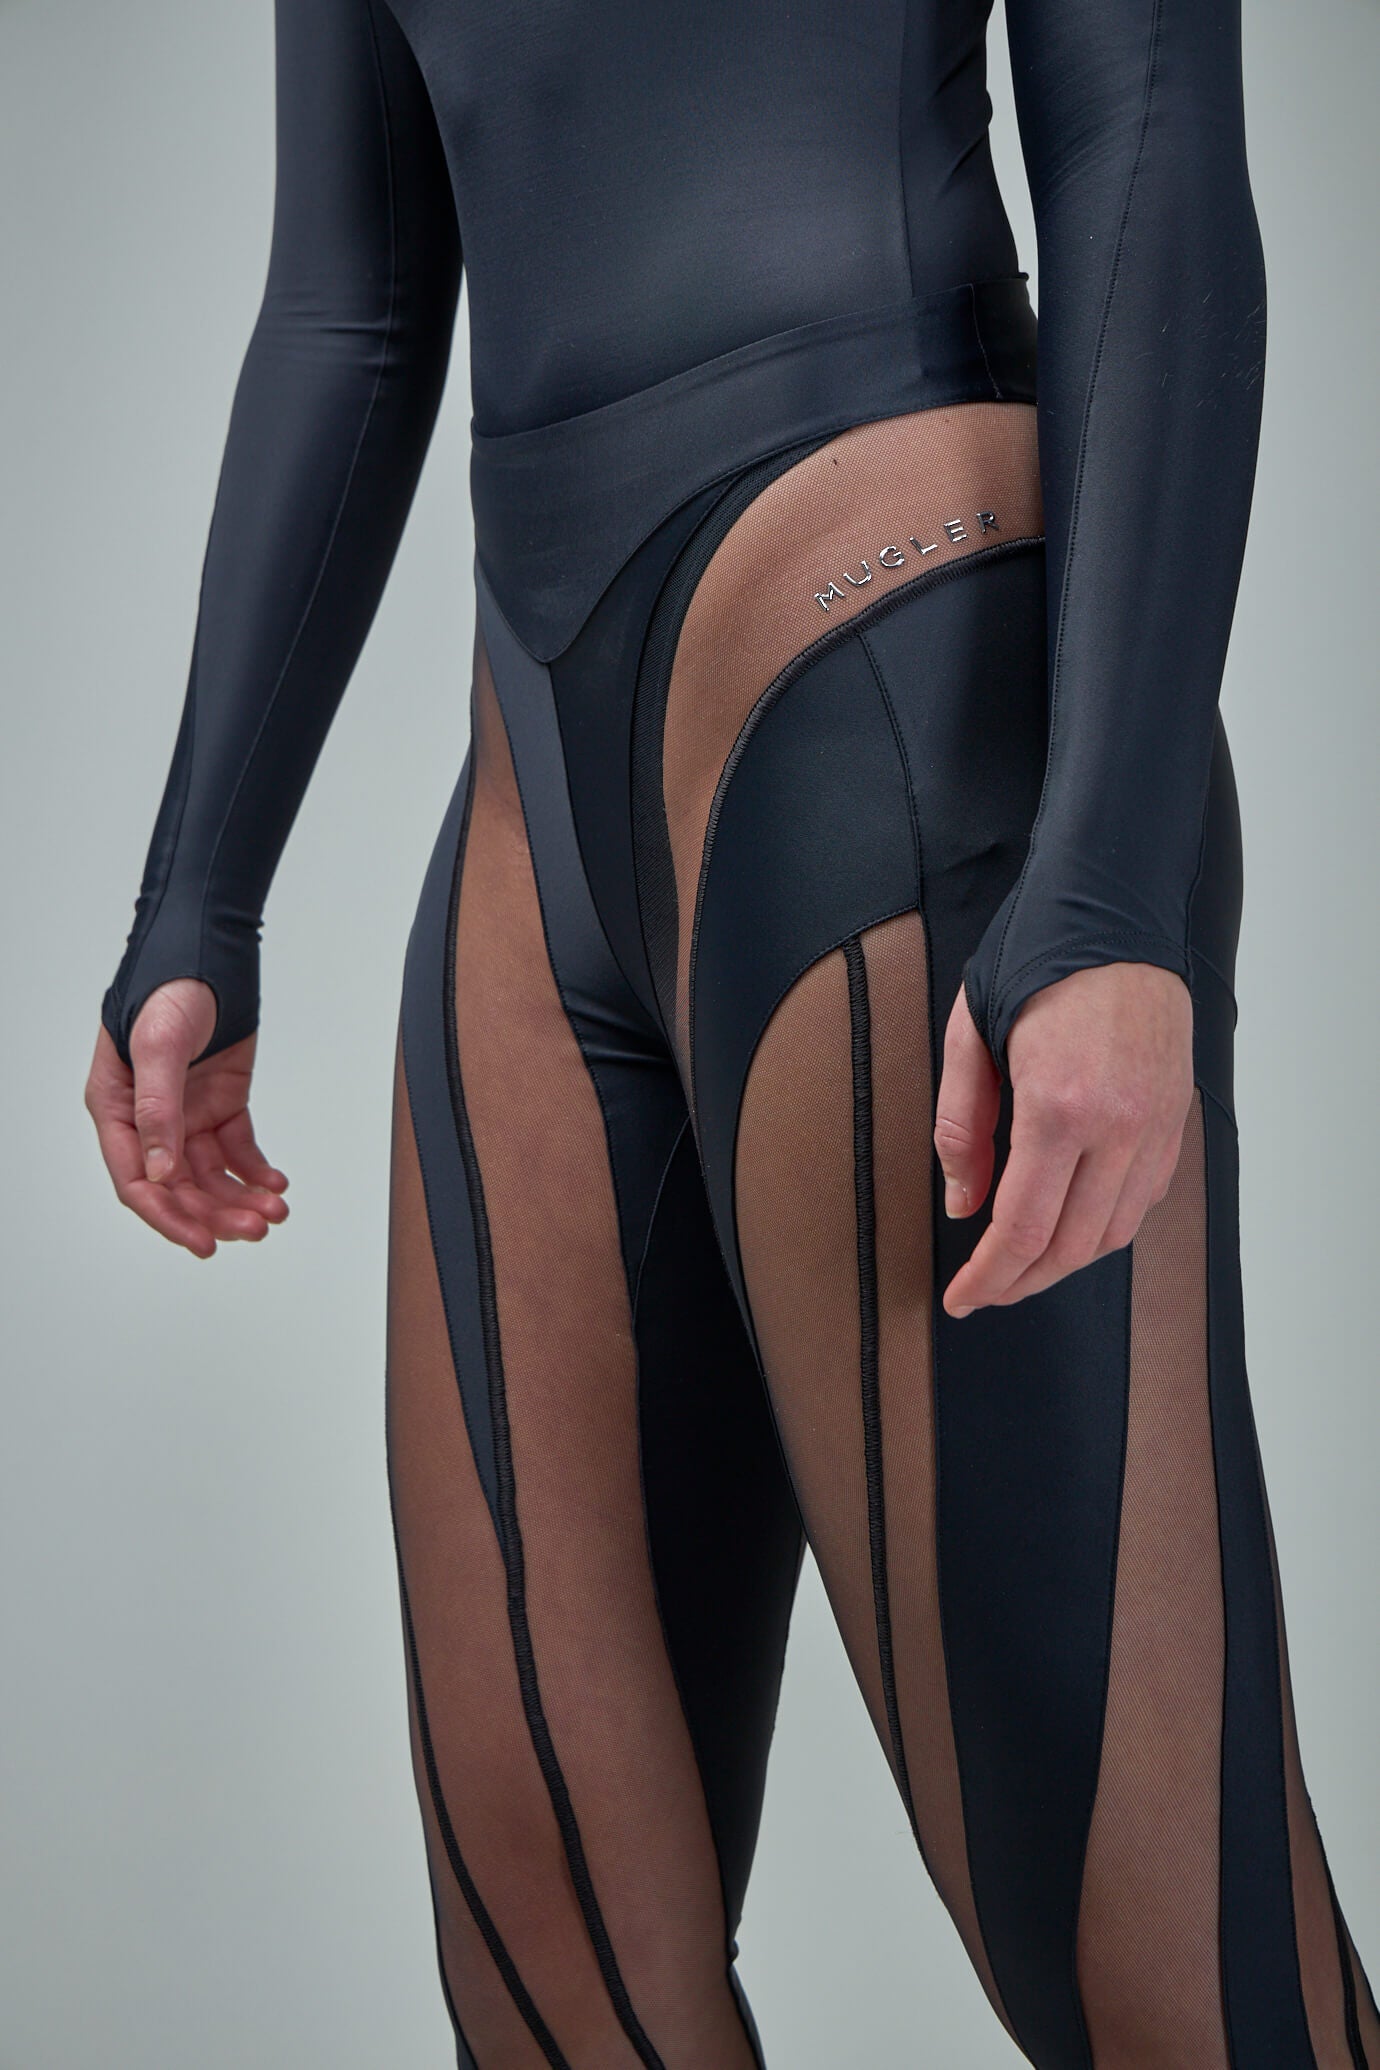 spiral leggings women black nude in polyamide - MUGLER - d — 2